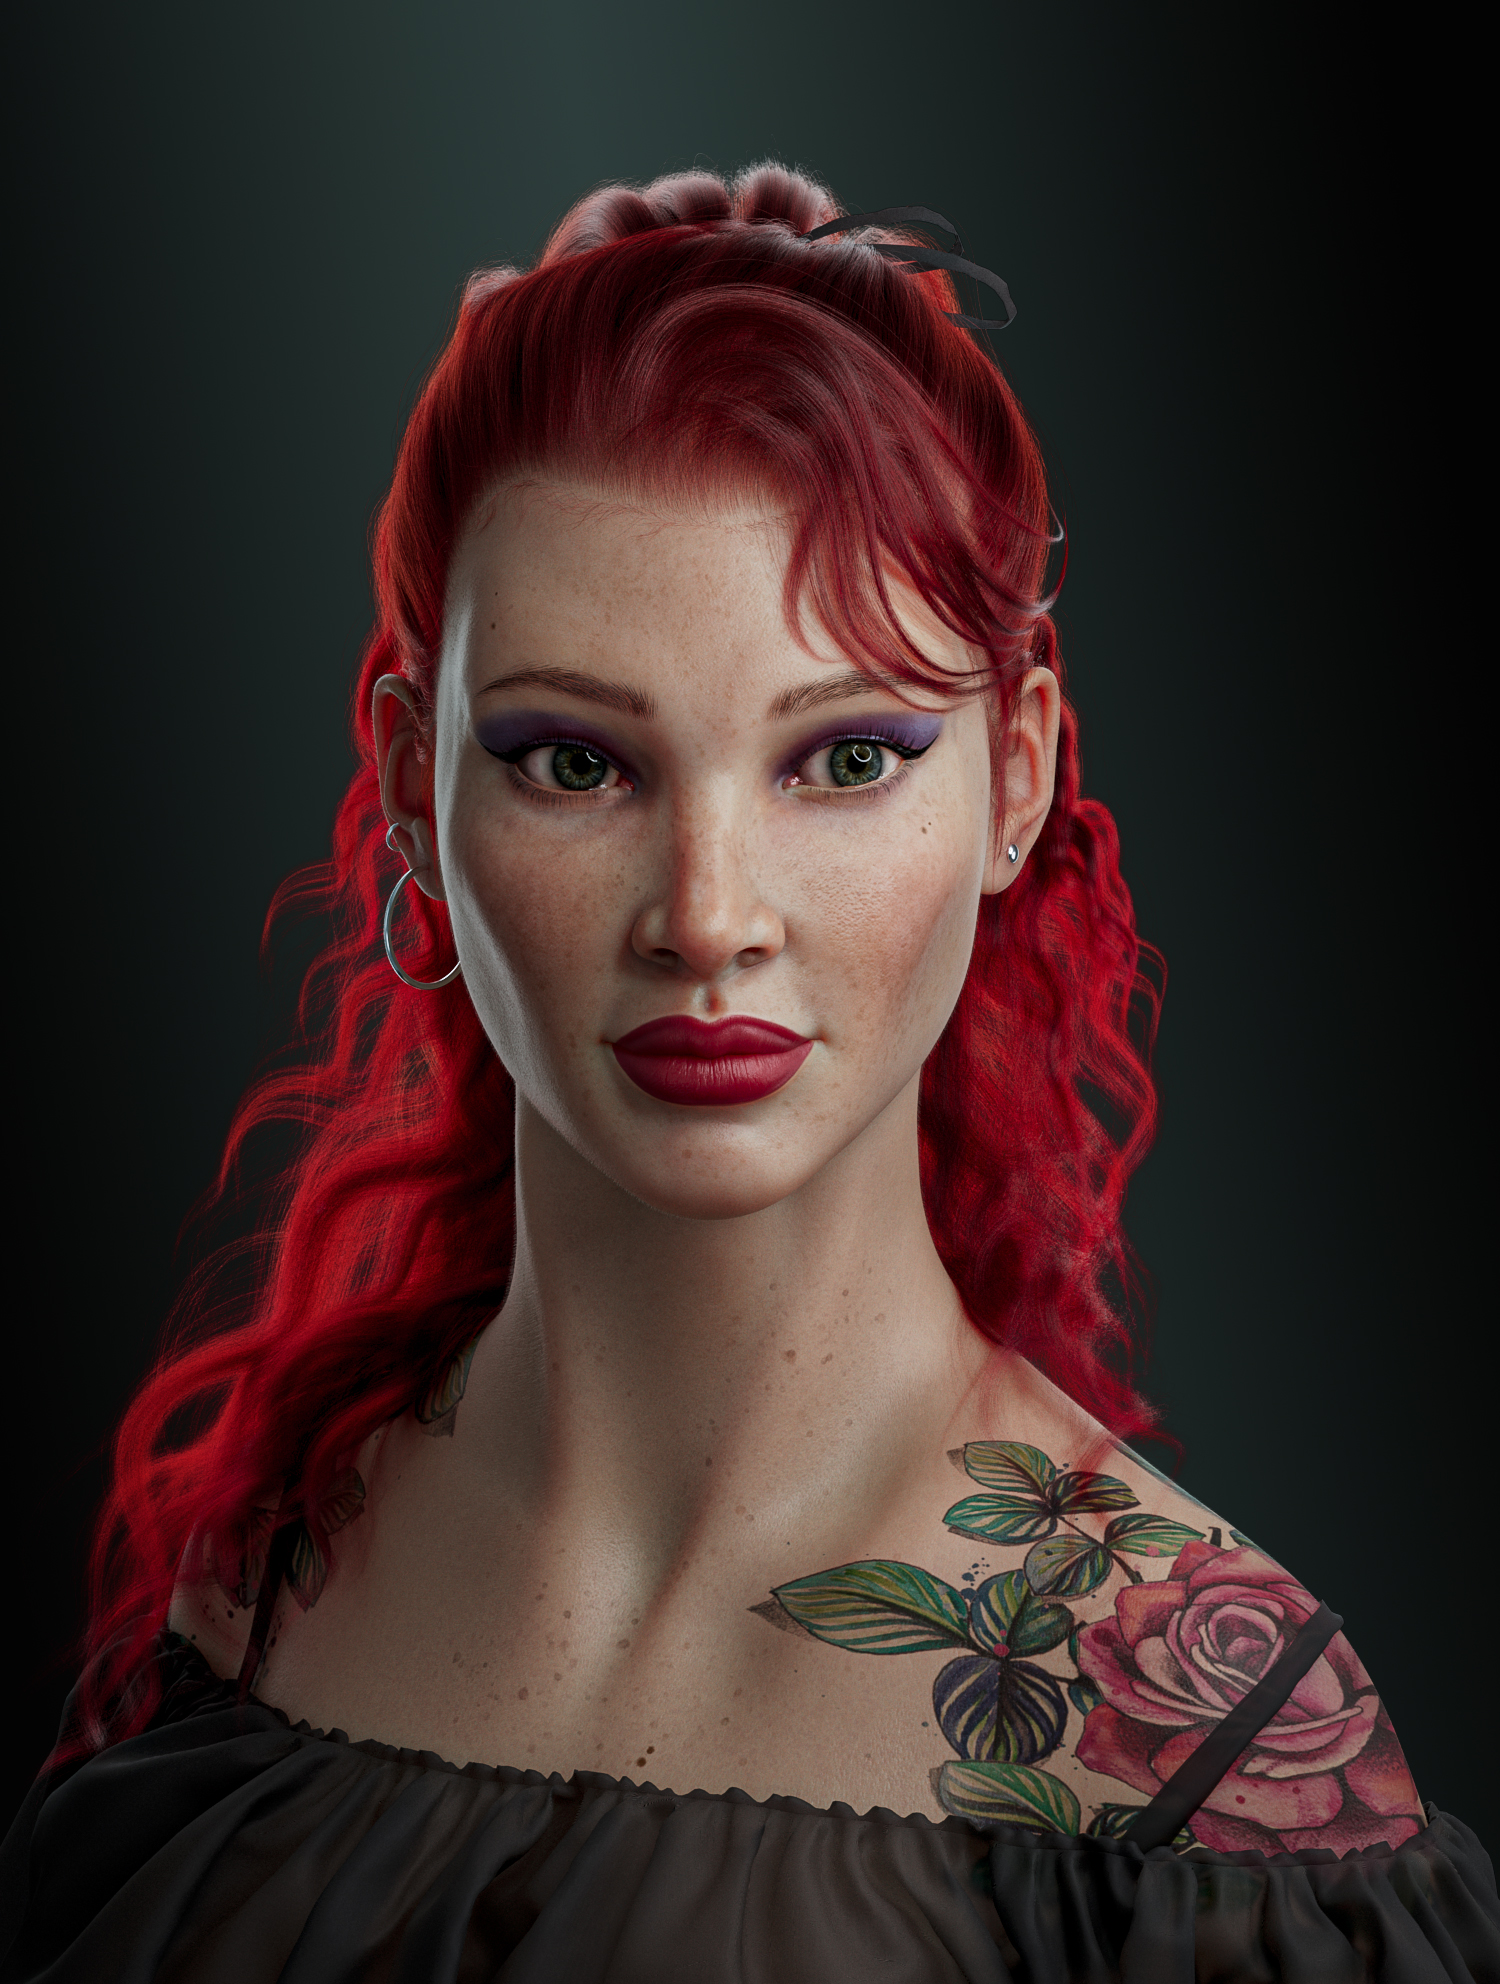 У женщины с рыжими волосами есть татуировка на правой руке.